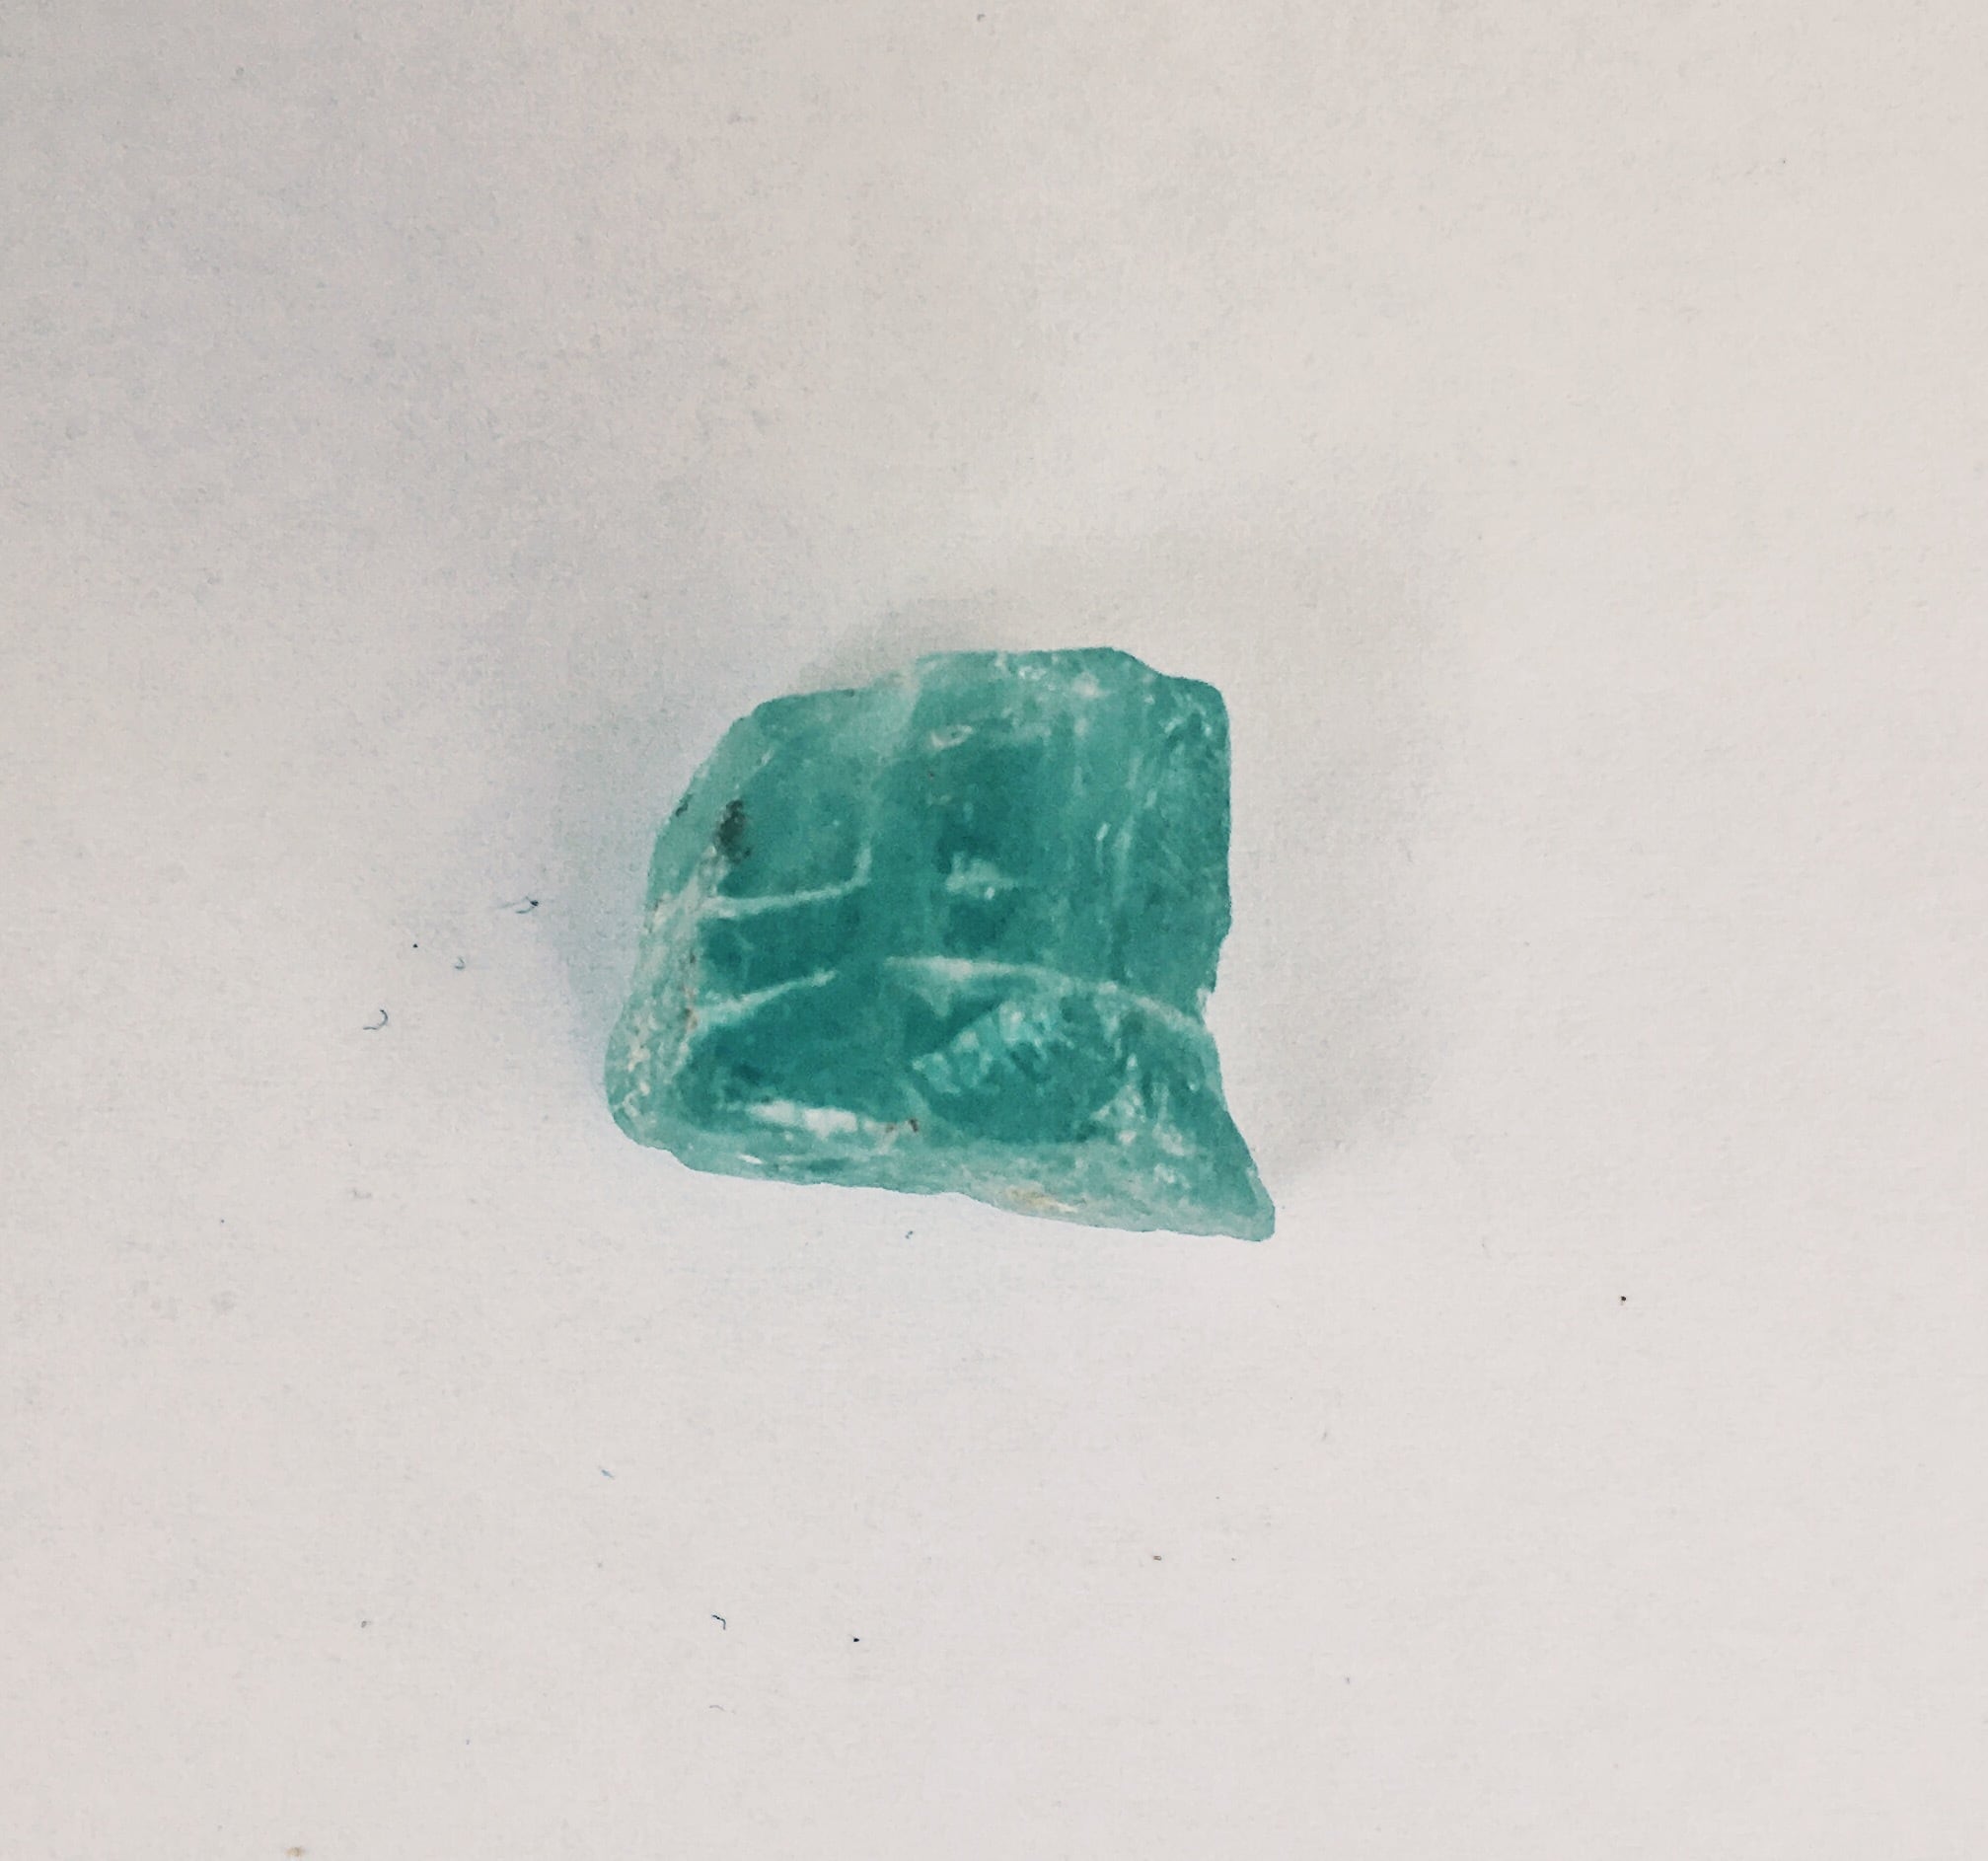 Aquamarine 〜潤〜 gemstone